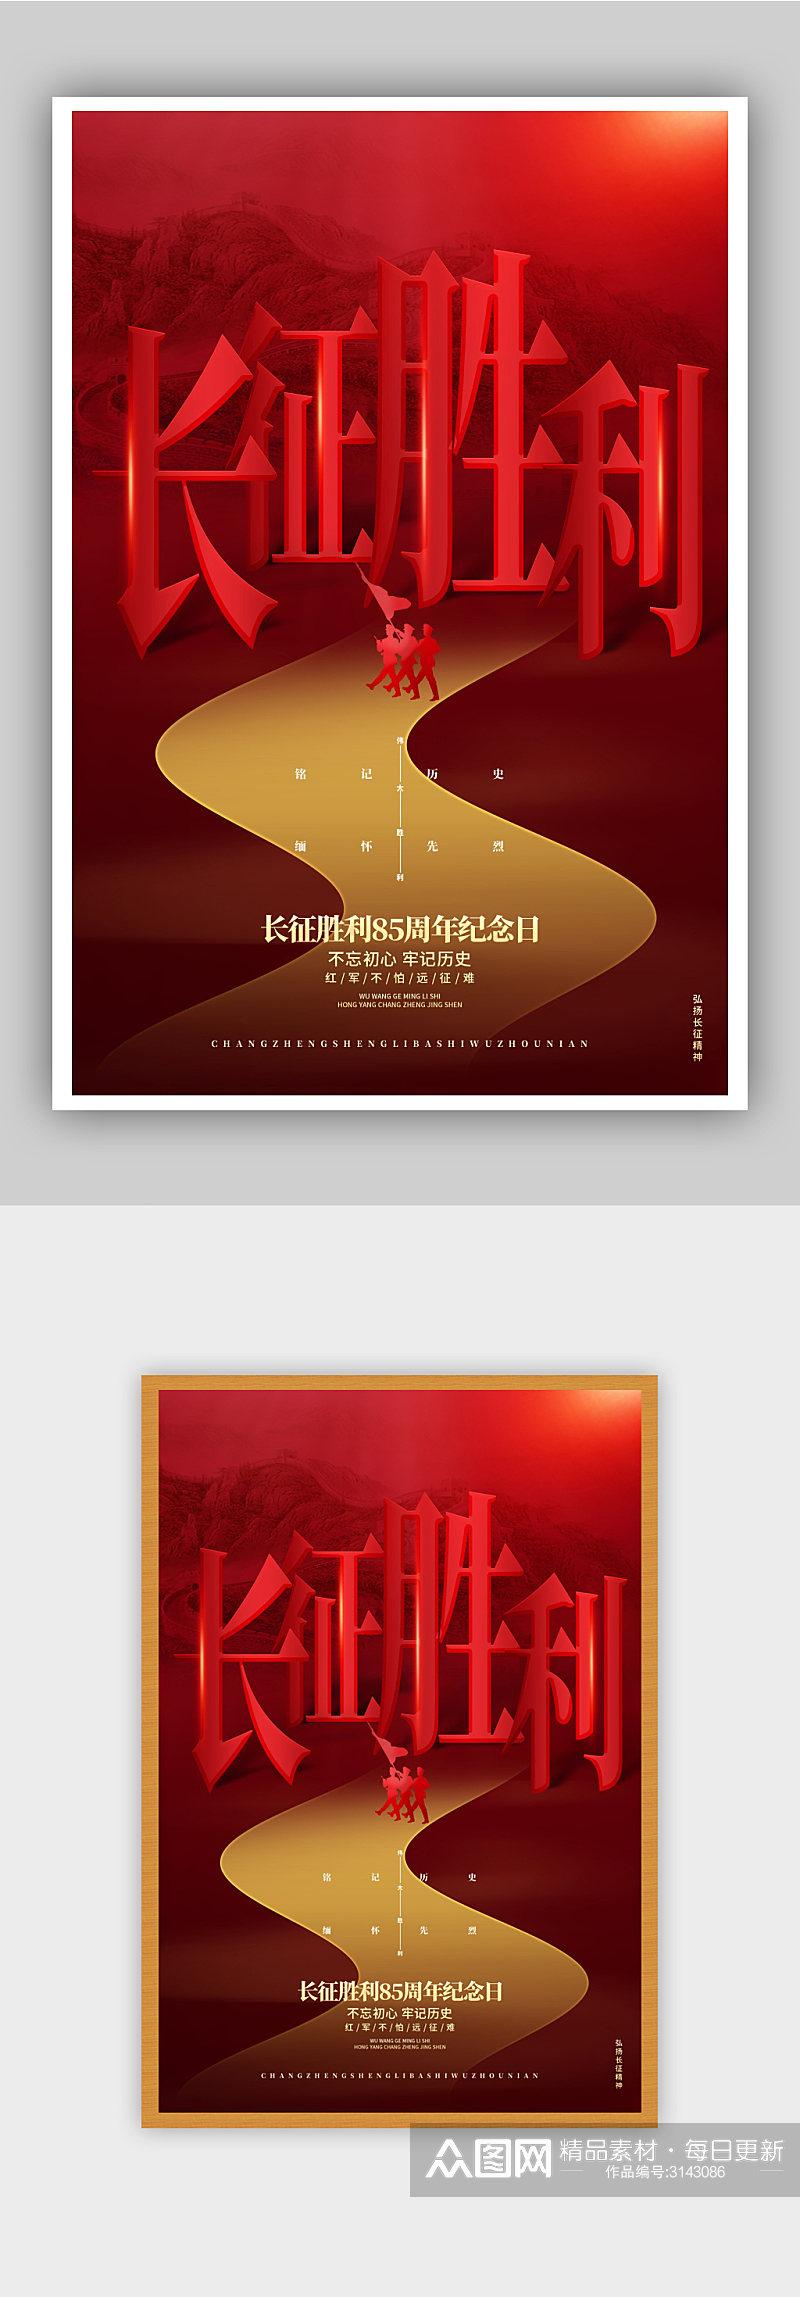 红色创意长征胜利85周年纪念日海报素材